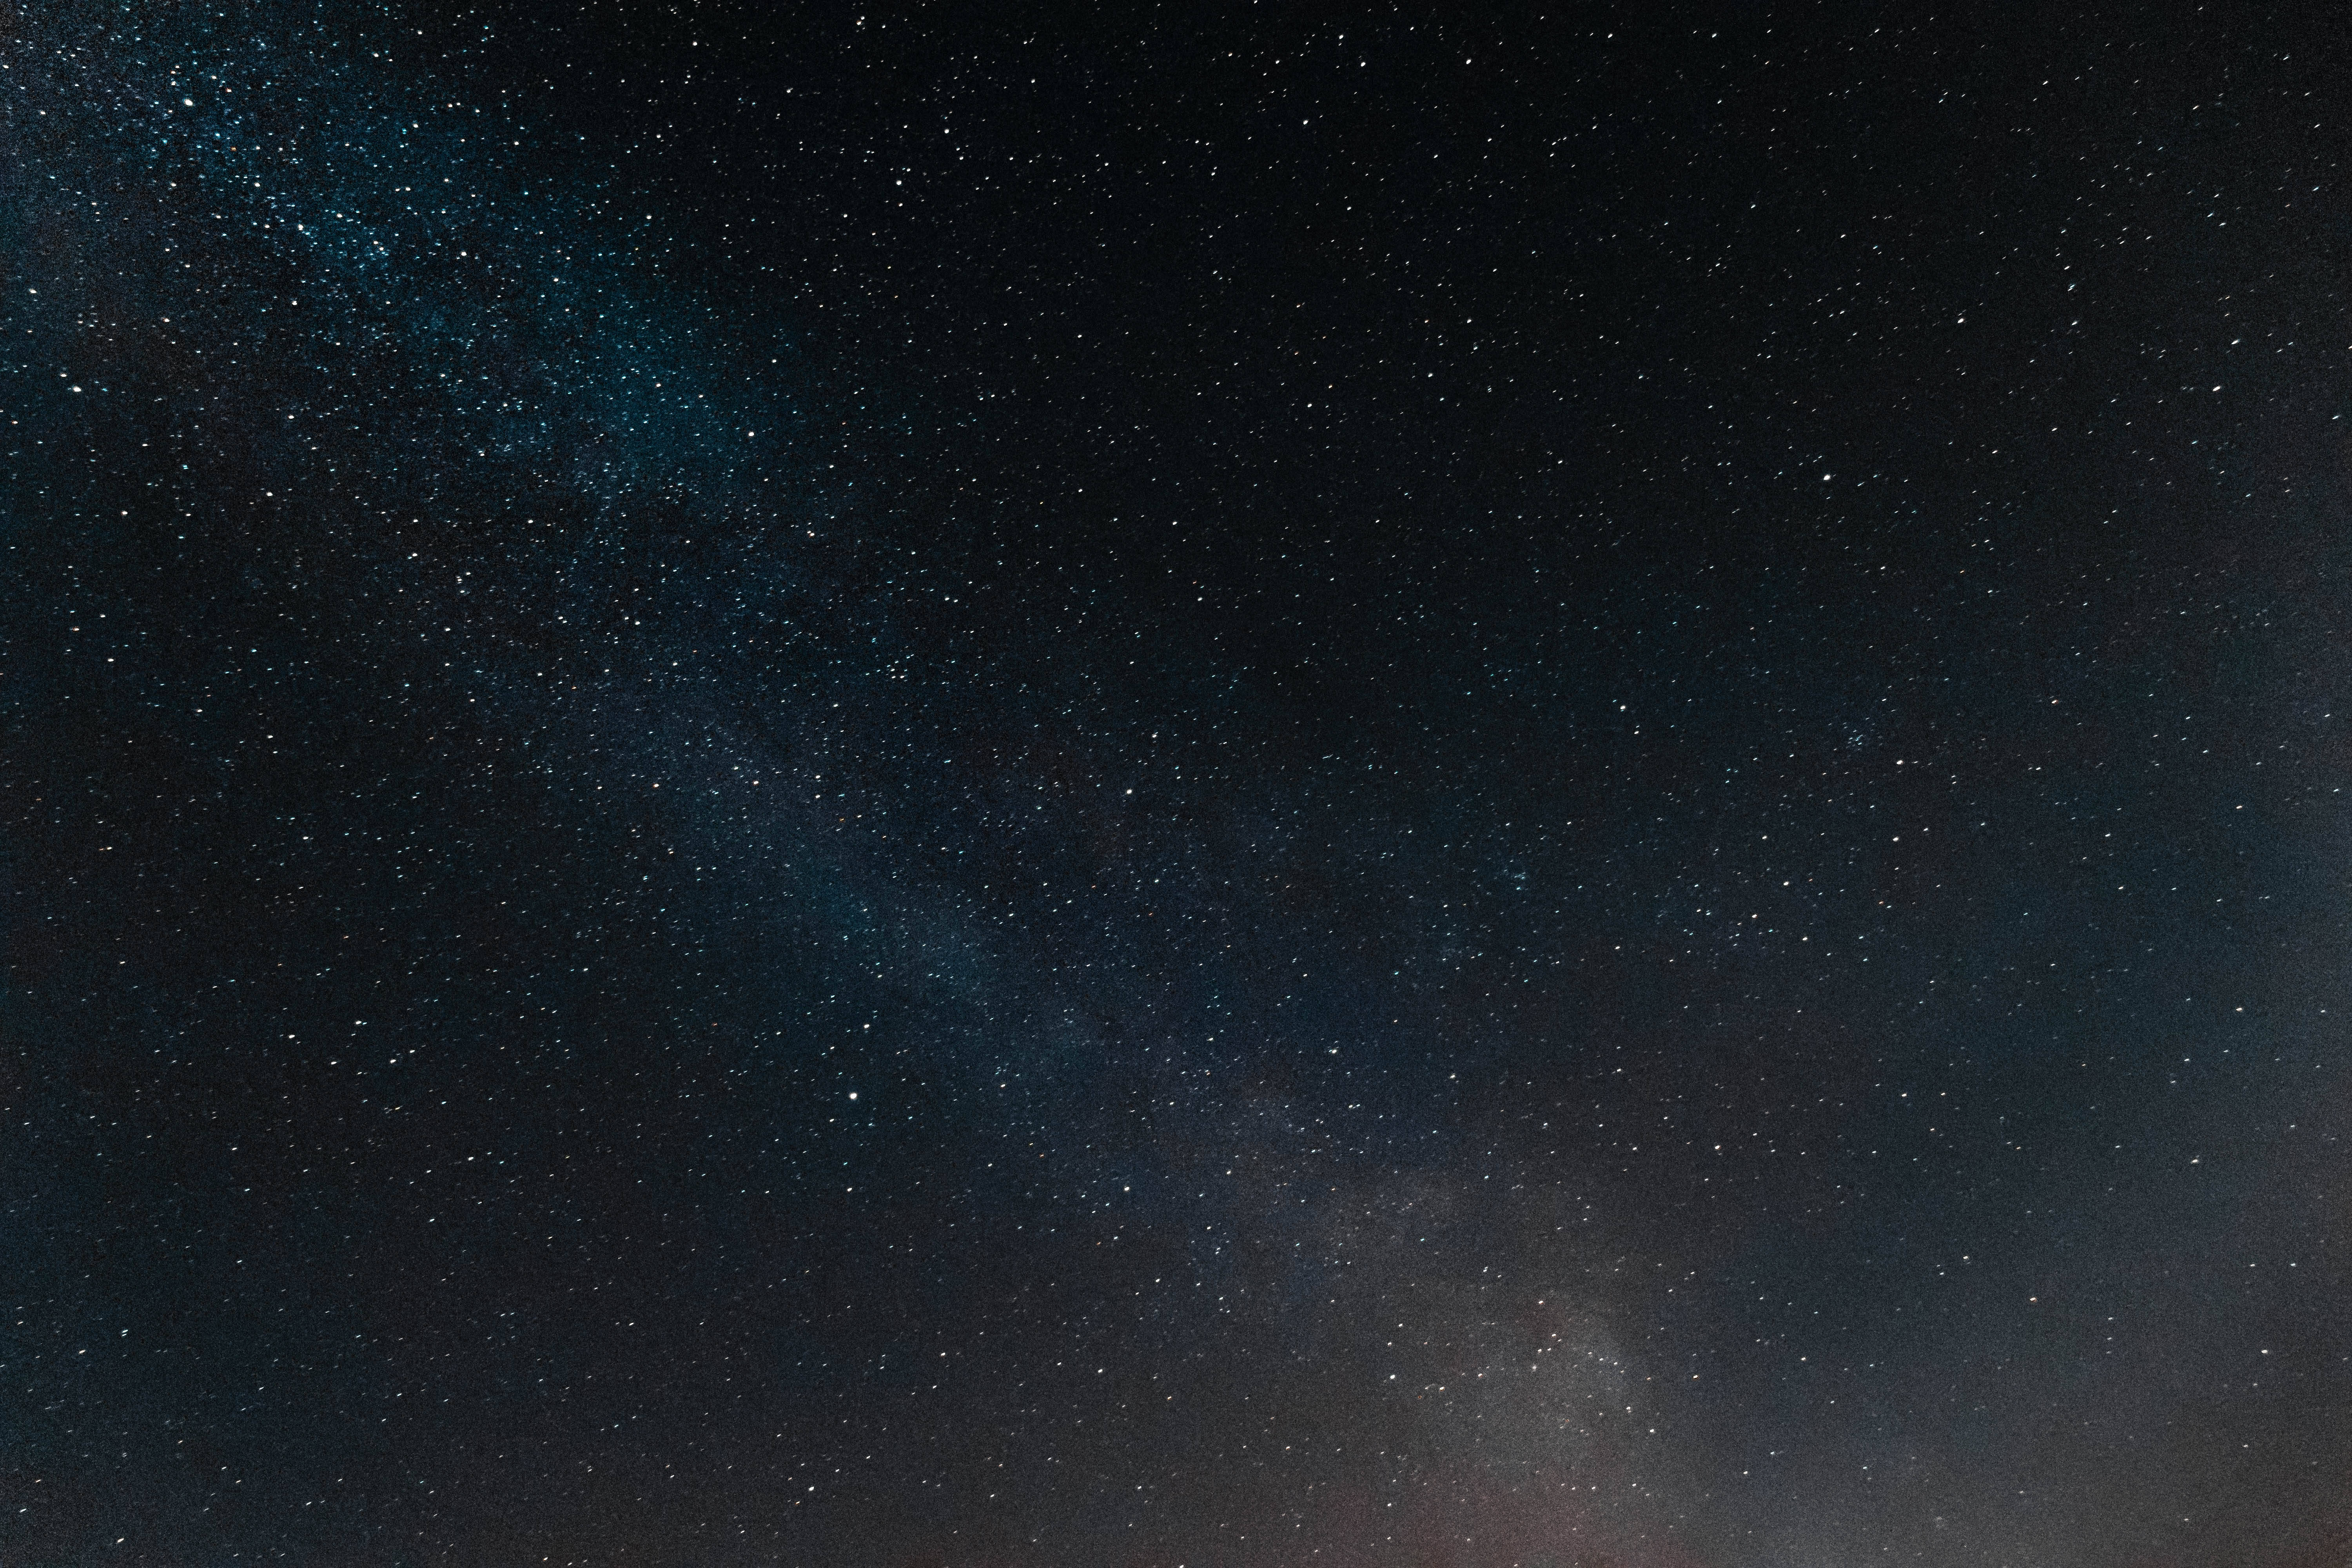 Bạn muốn trang trí máy tính của mình với những hình ảnh tuyệt đẹp của vũ trụ và bầu trời đêm? Hãy tải xuống Dark Sky 4k Space Desktop Wallpaper từ Hình nền.com – nơi có những bức ảnh độc đáo và chất lượng nhất. Bạn sẽ không muốn bỏ lỡ những bức ảnh đẹp này để làm nổi bật cho desktop của bạn.